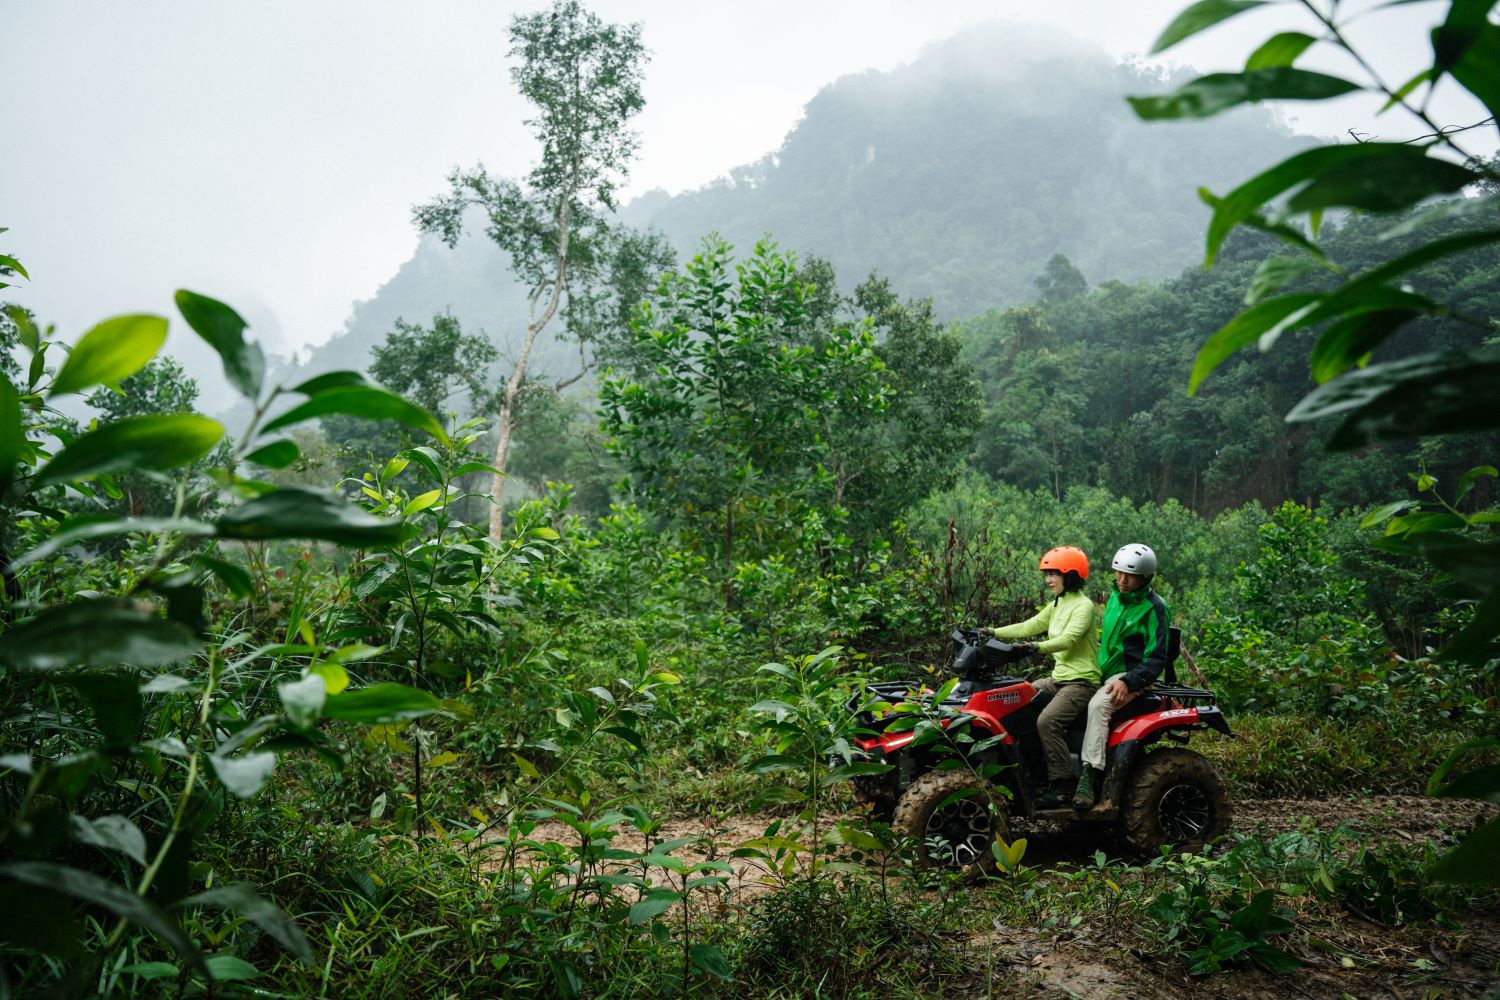 Chạy xe địa hình ATV qua bìa cánh rừng Lim hàng trăm tuổi.